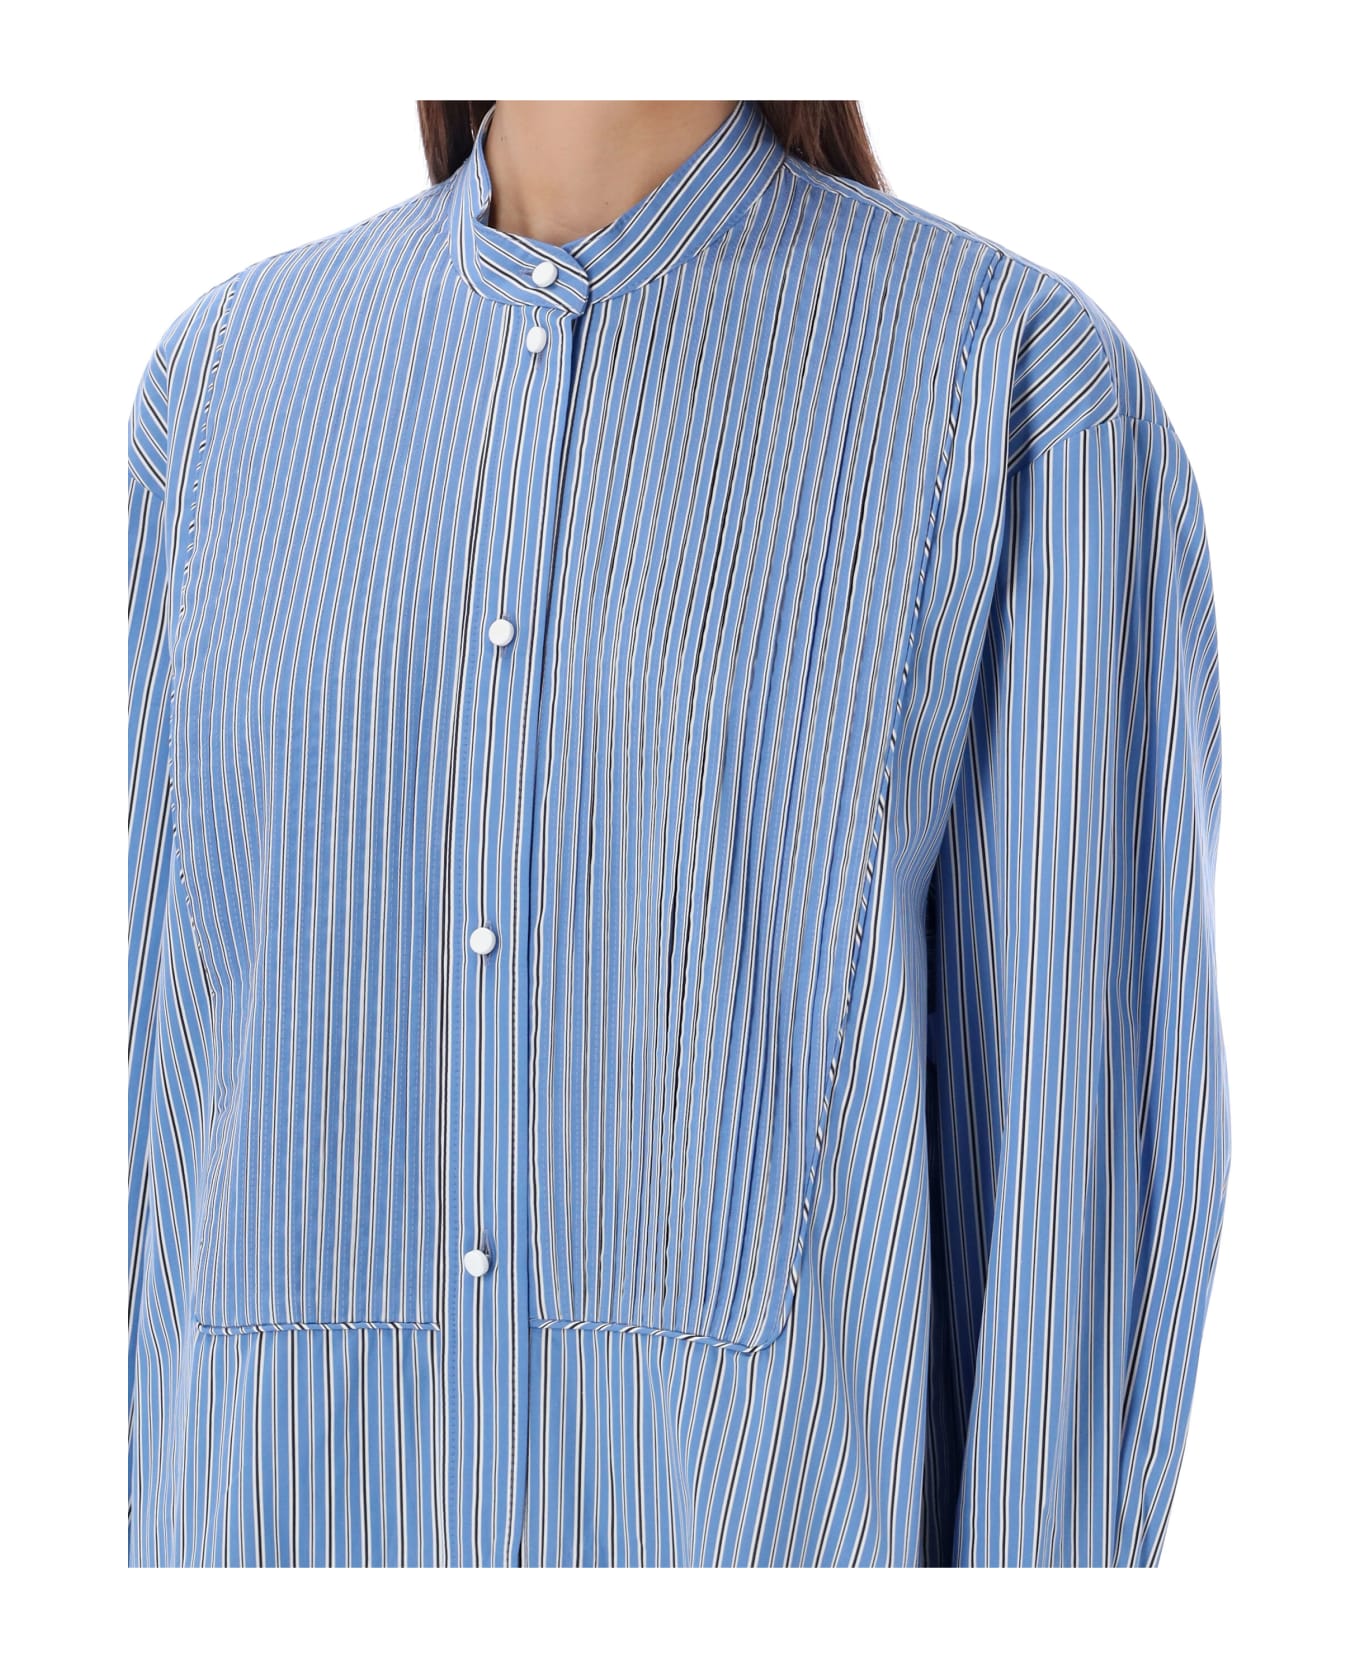 Isabel Marant Rineta Shirt Dress - BLUE